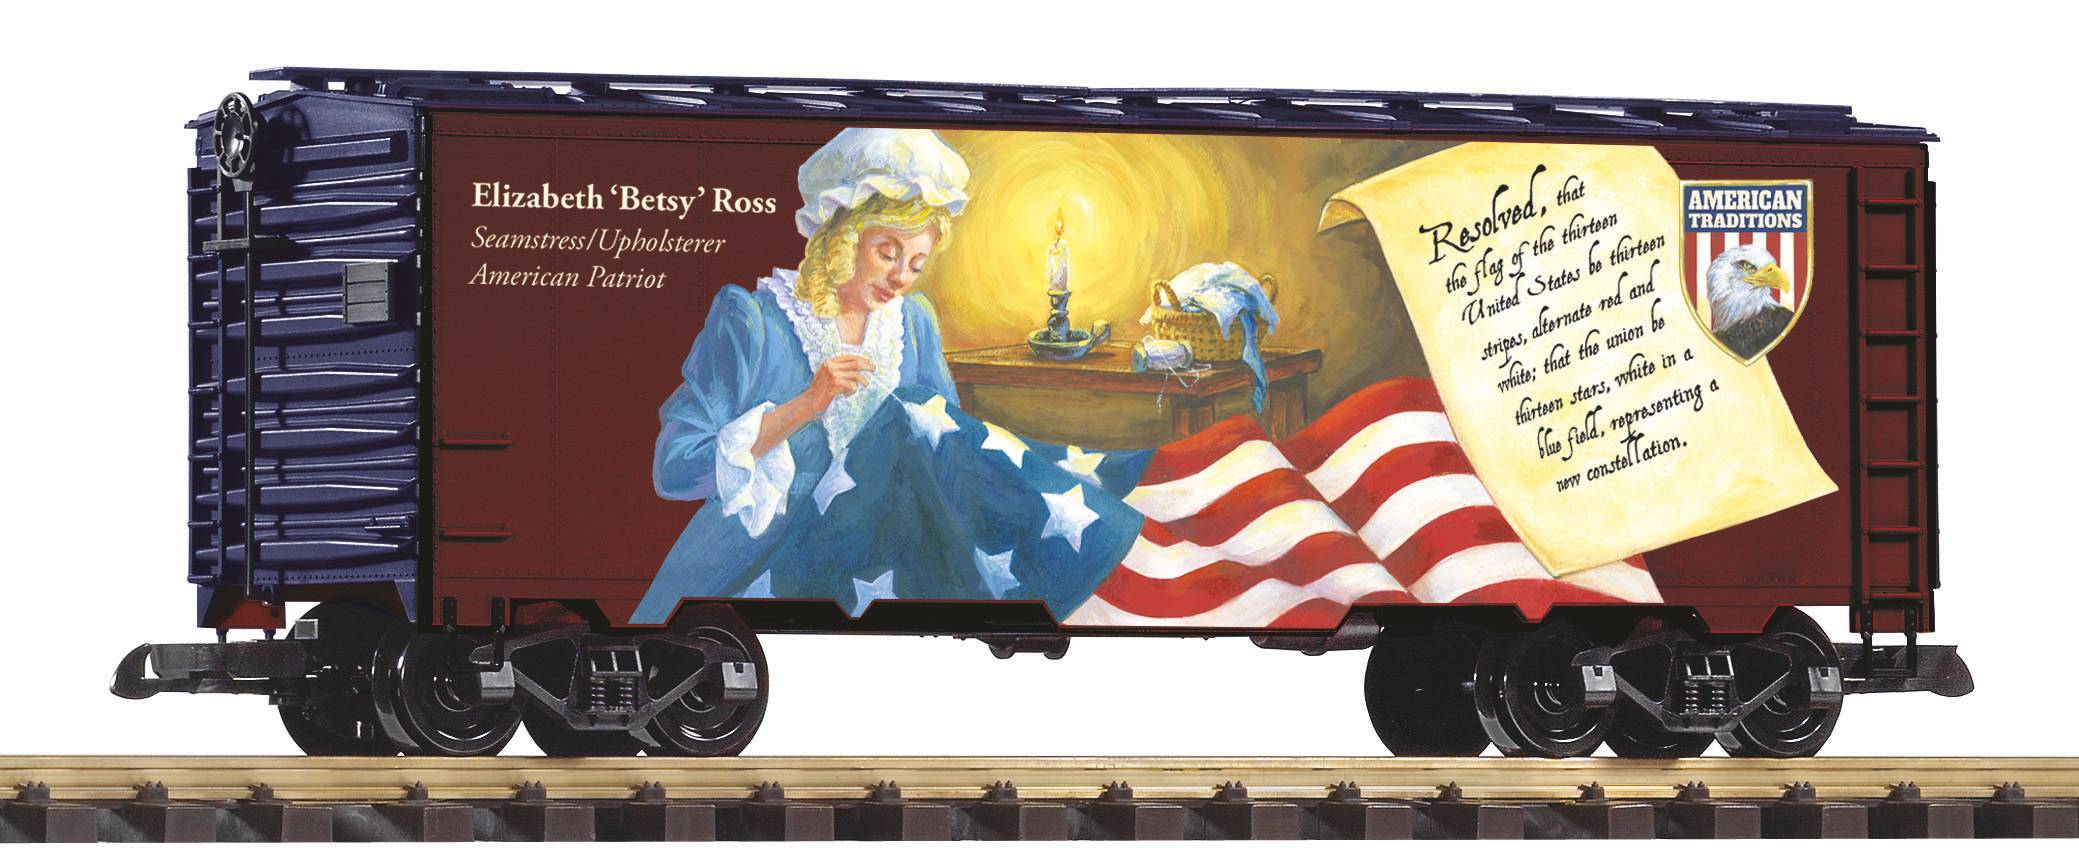 G Khlwagen "Patriot" - Mit Betsy Ross - nhte die erste Fahne der USA - Art. Nr. 38922 - Neuheit 2021